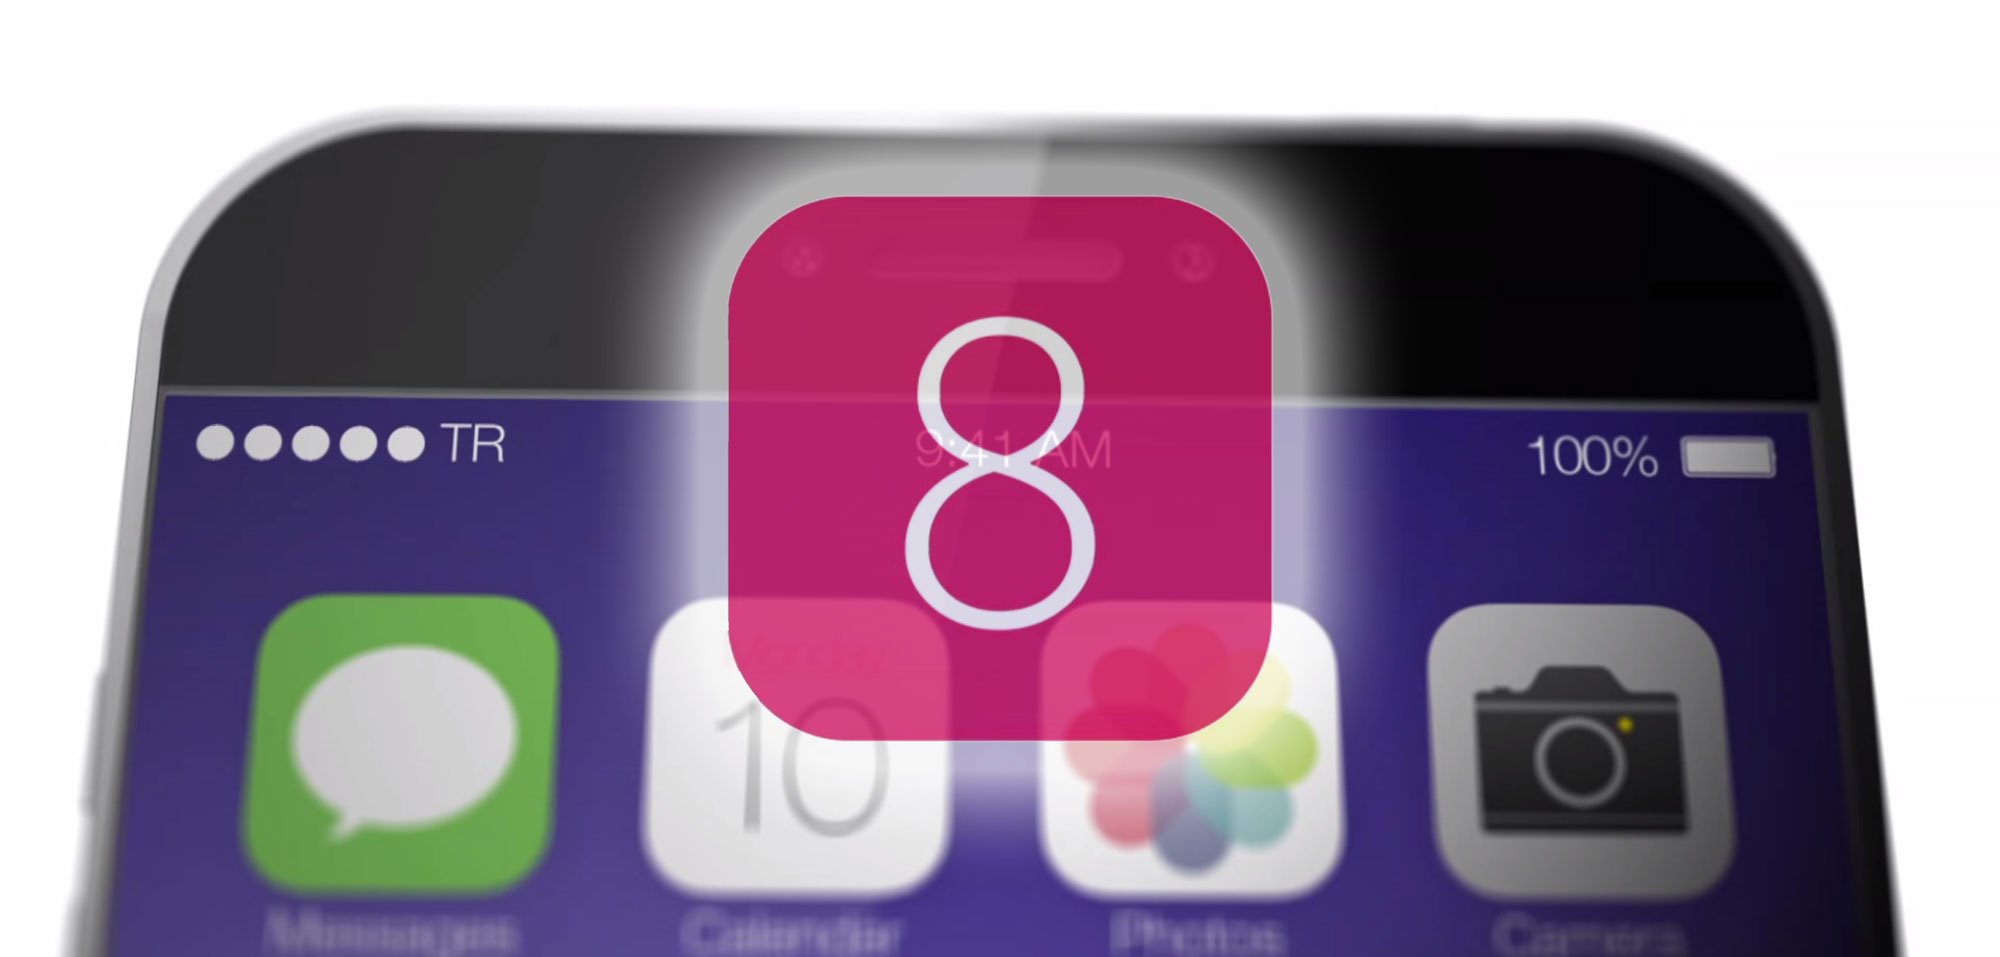 iOS 8: Neue Funktionen erst mit iOS 8.1 statt iOS 8? 1